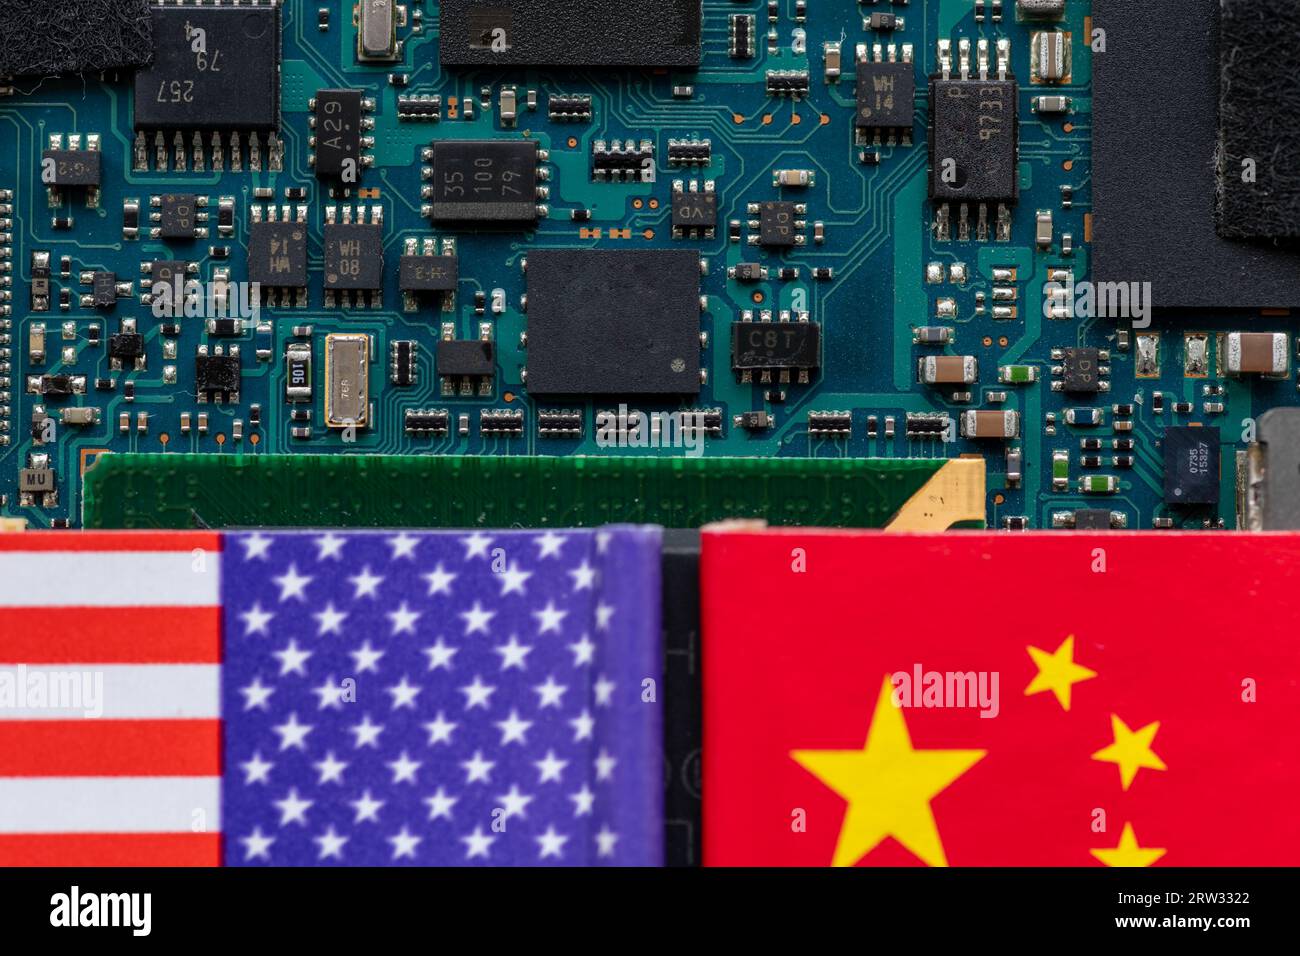 Ein Technologiekonflikt, Wettbewerbskonzept mit den amerikanischen und chinesischen Flaggen auf einer Halbleiterplatine. Stockfoto